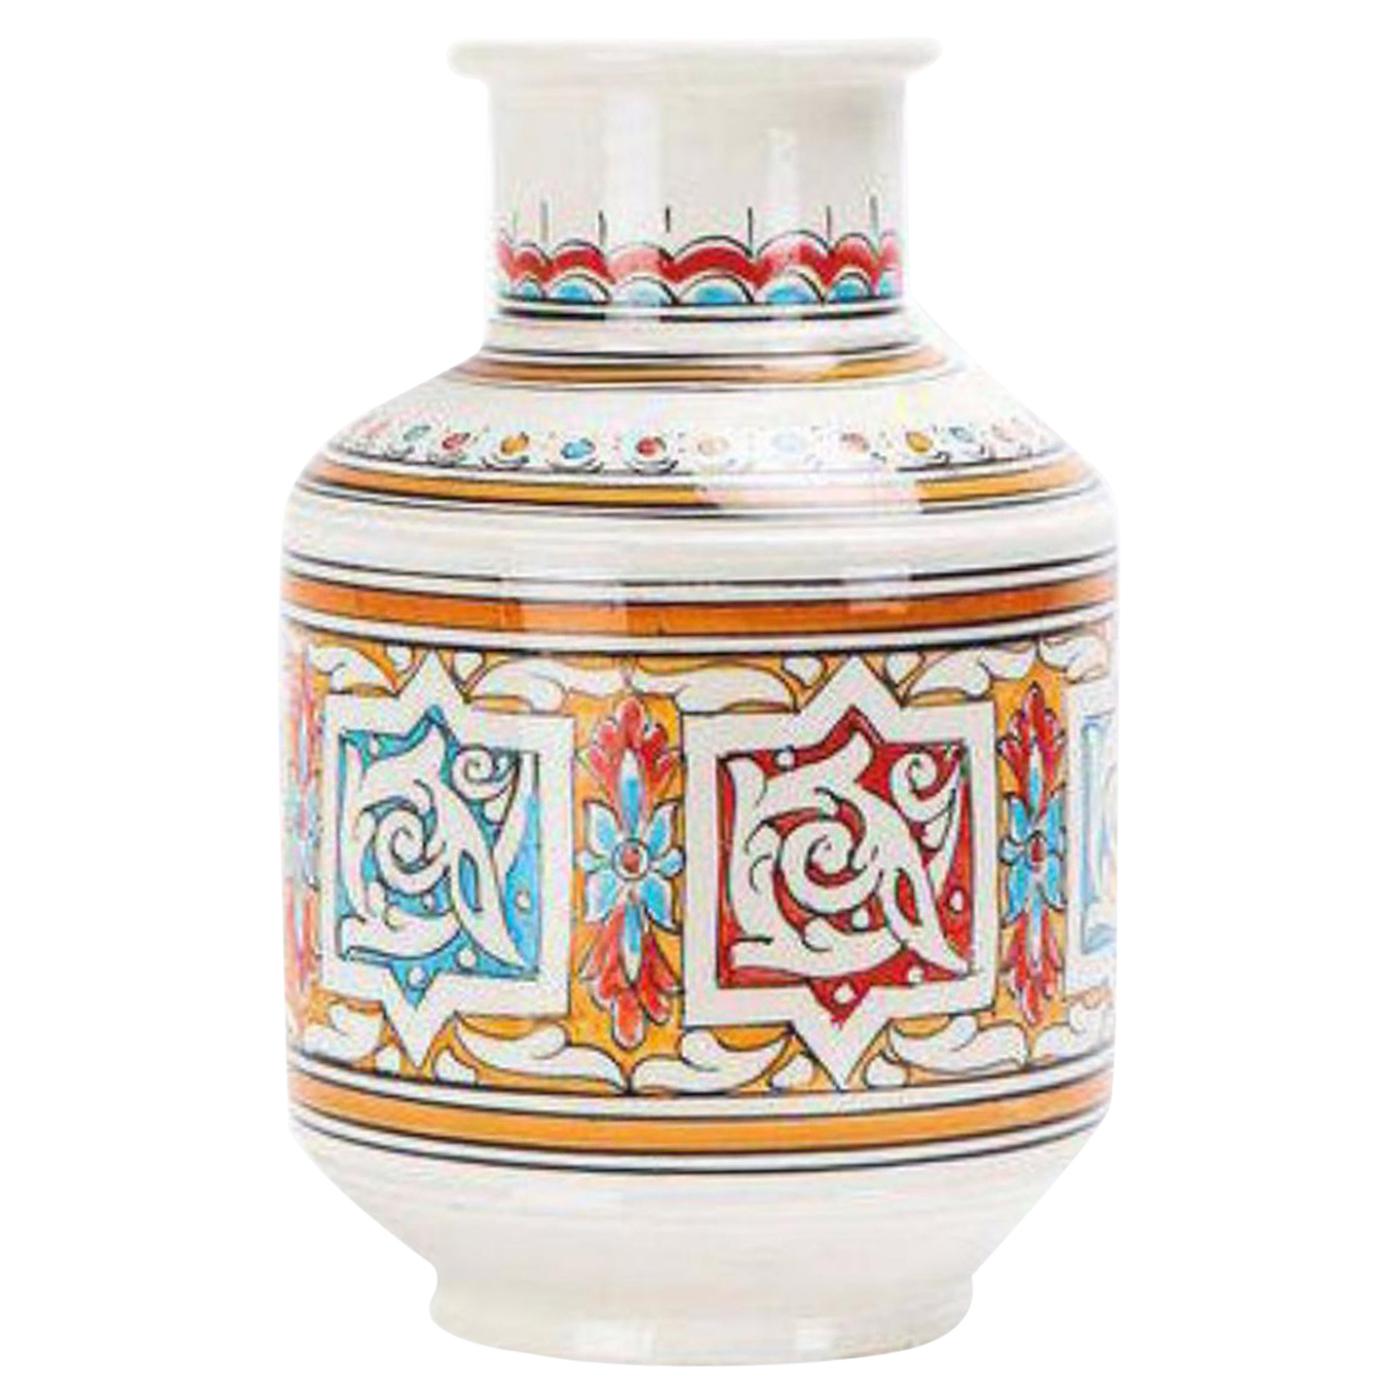 Vase marocain en céramique vintage orange, bleu et blanc, fabriqué à la main